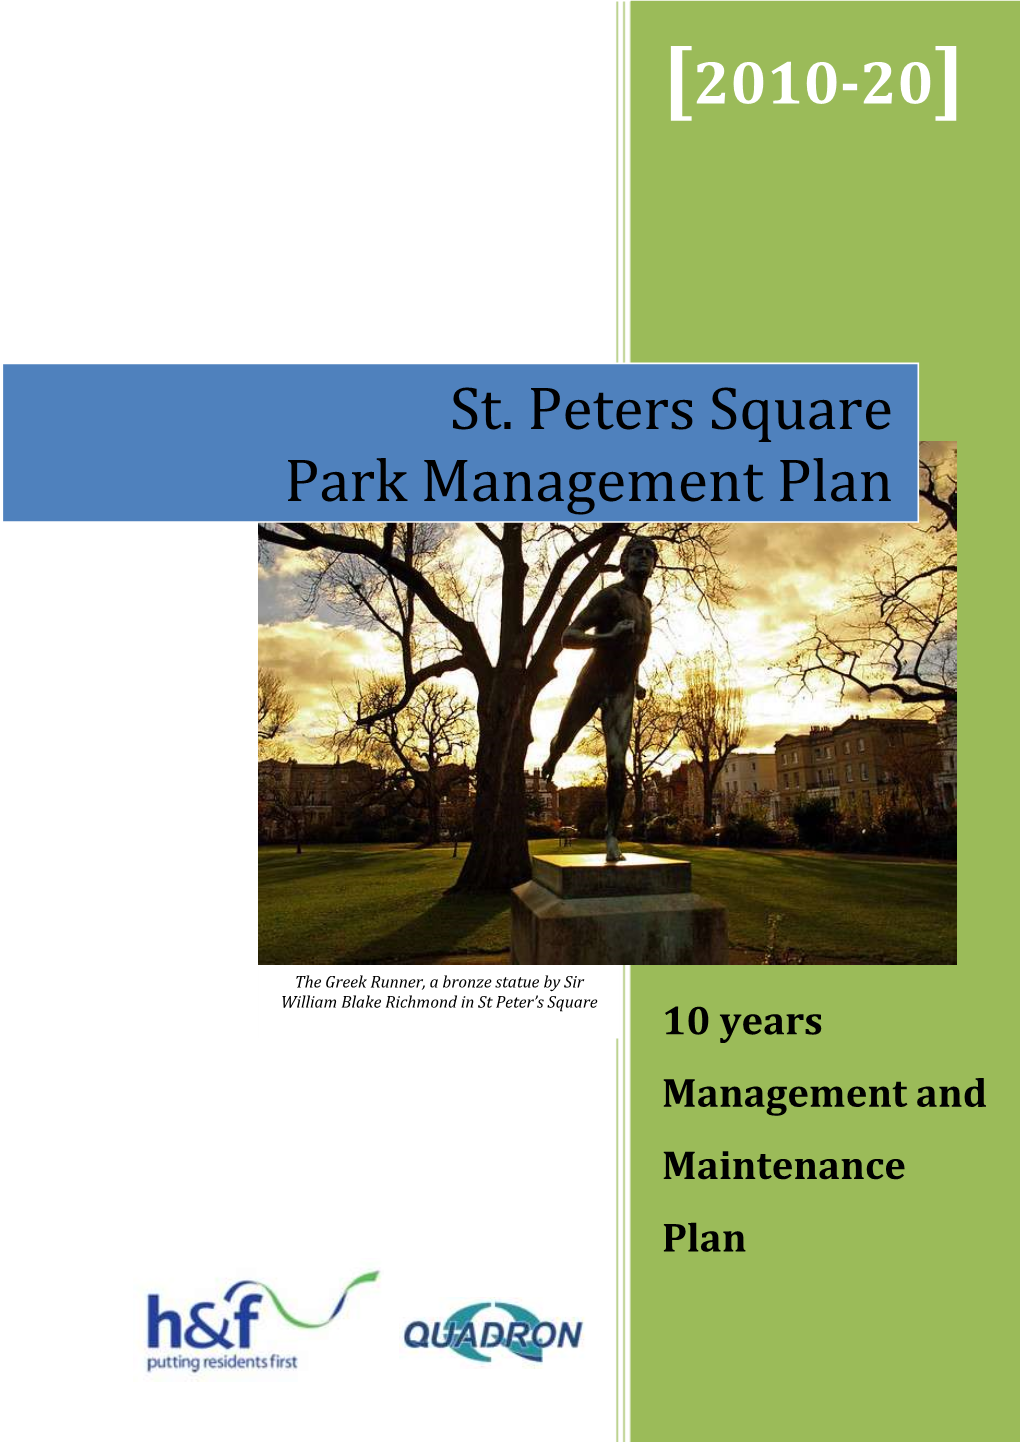 St. Peters Square Park Management Plan